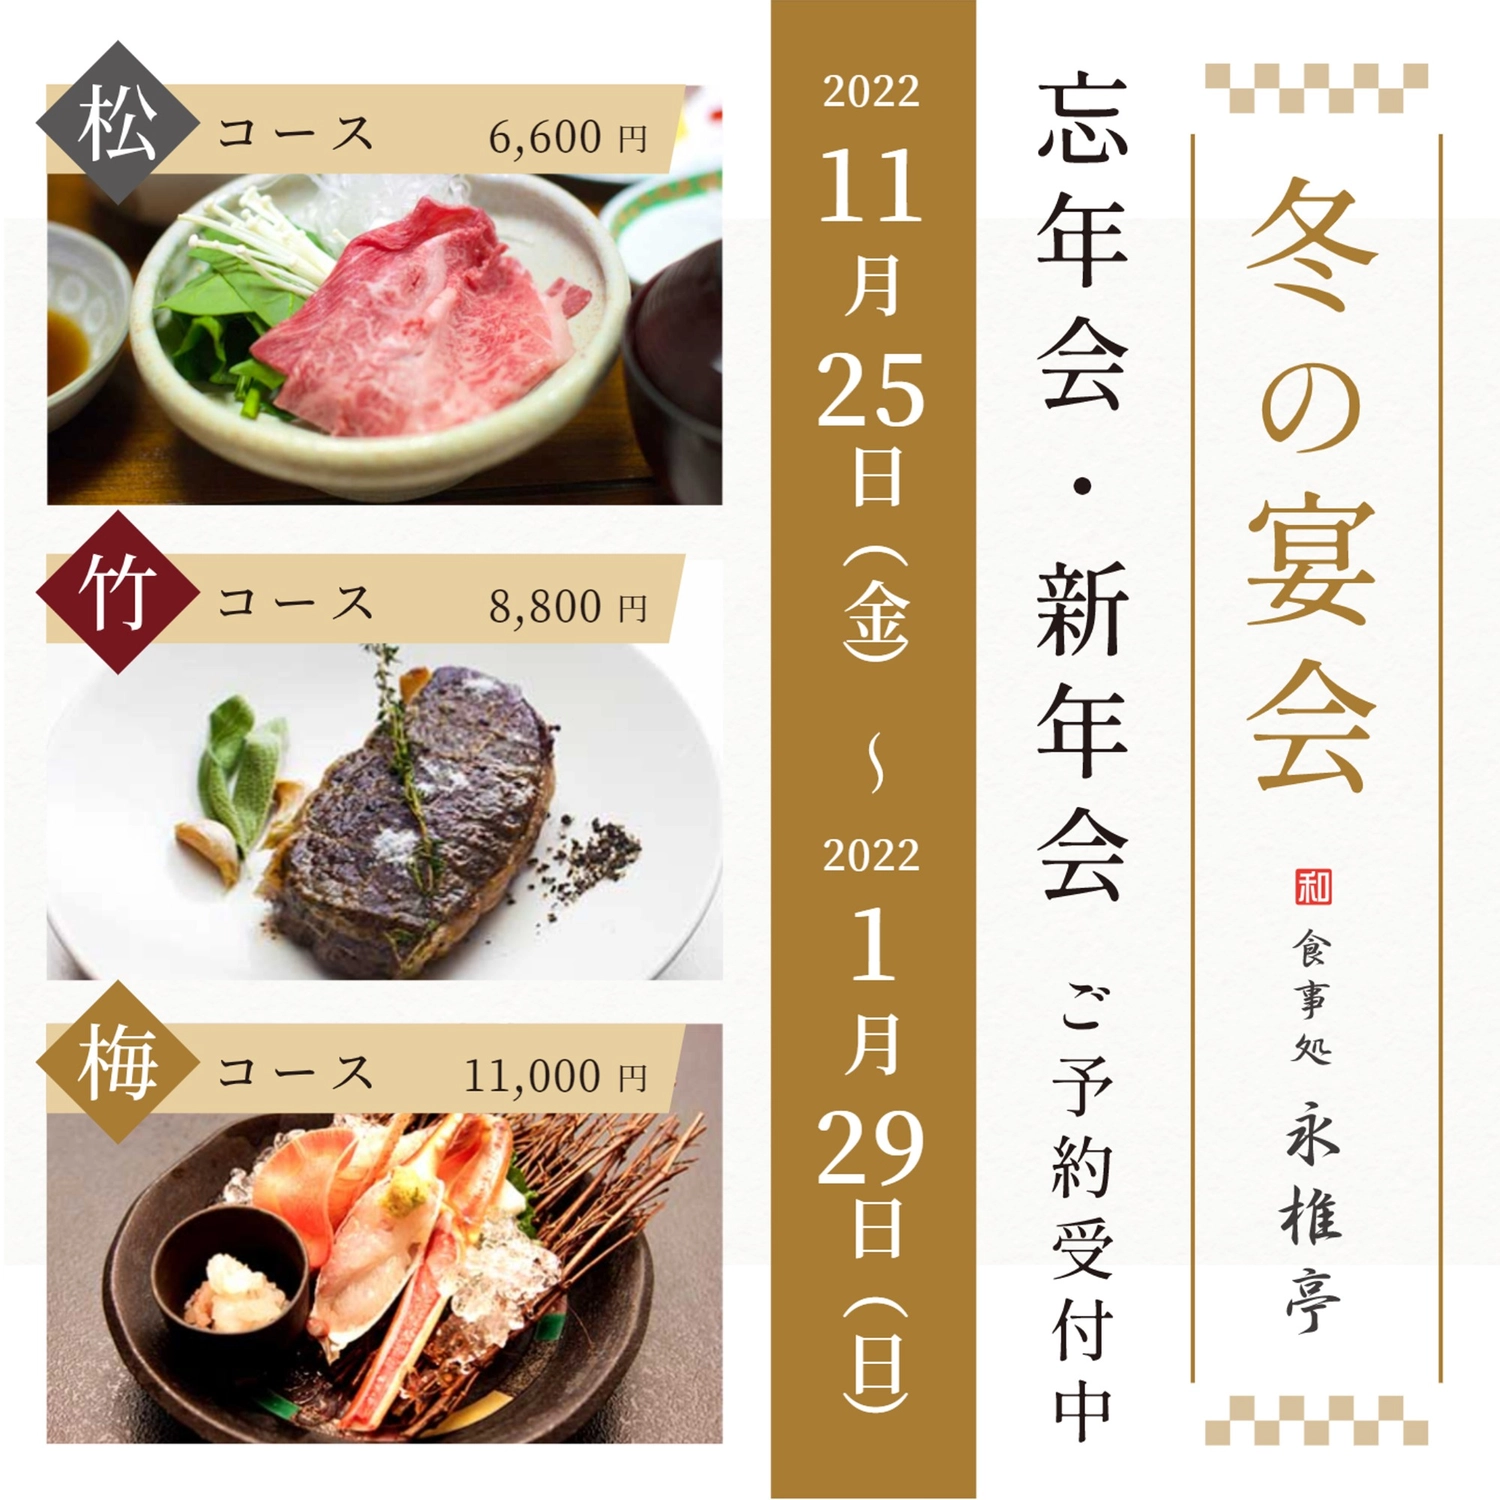 ３枚の写真を使った忘年会、新年会の広告
, khởi đầu năm mới, cuối năm, nhà hàng, Instagram Post mẫu